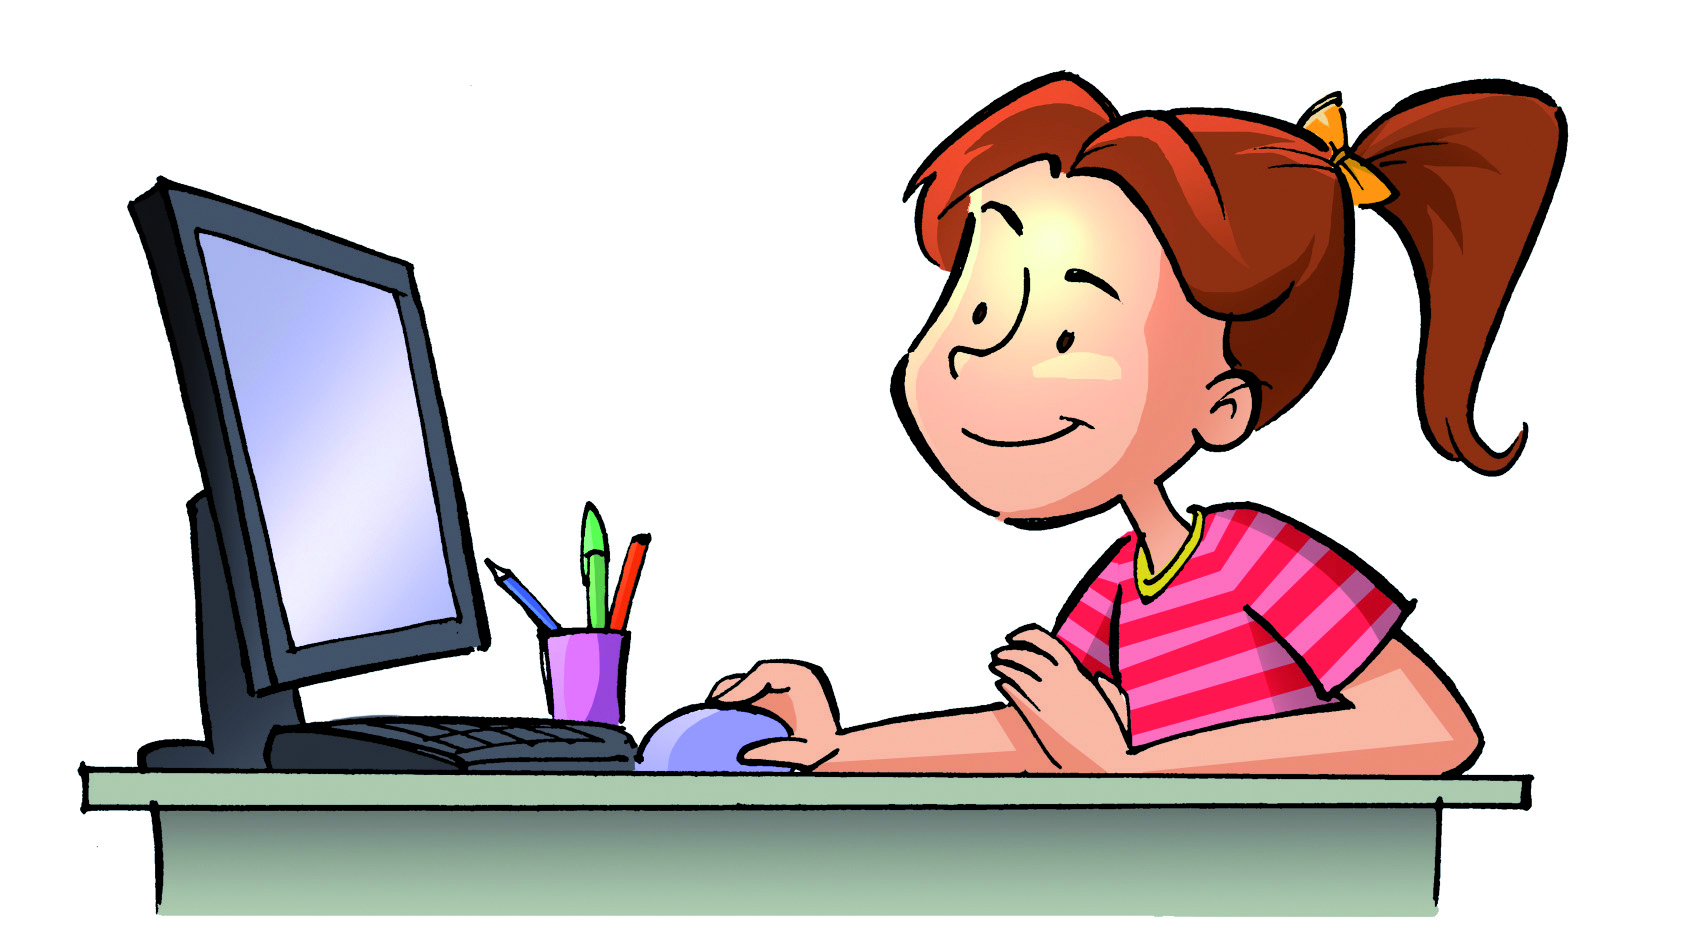 Ilustração: uma menina branca, de cabelo castanho amarrado, camiseta listrada rosa e vermelho está sentada em frente da tela de um computador com o mouse na mão. Sobre à mesa, um porta canetas.